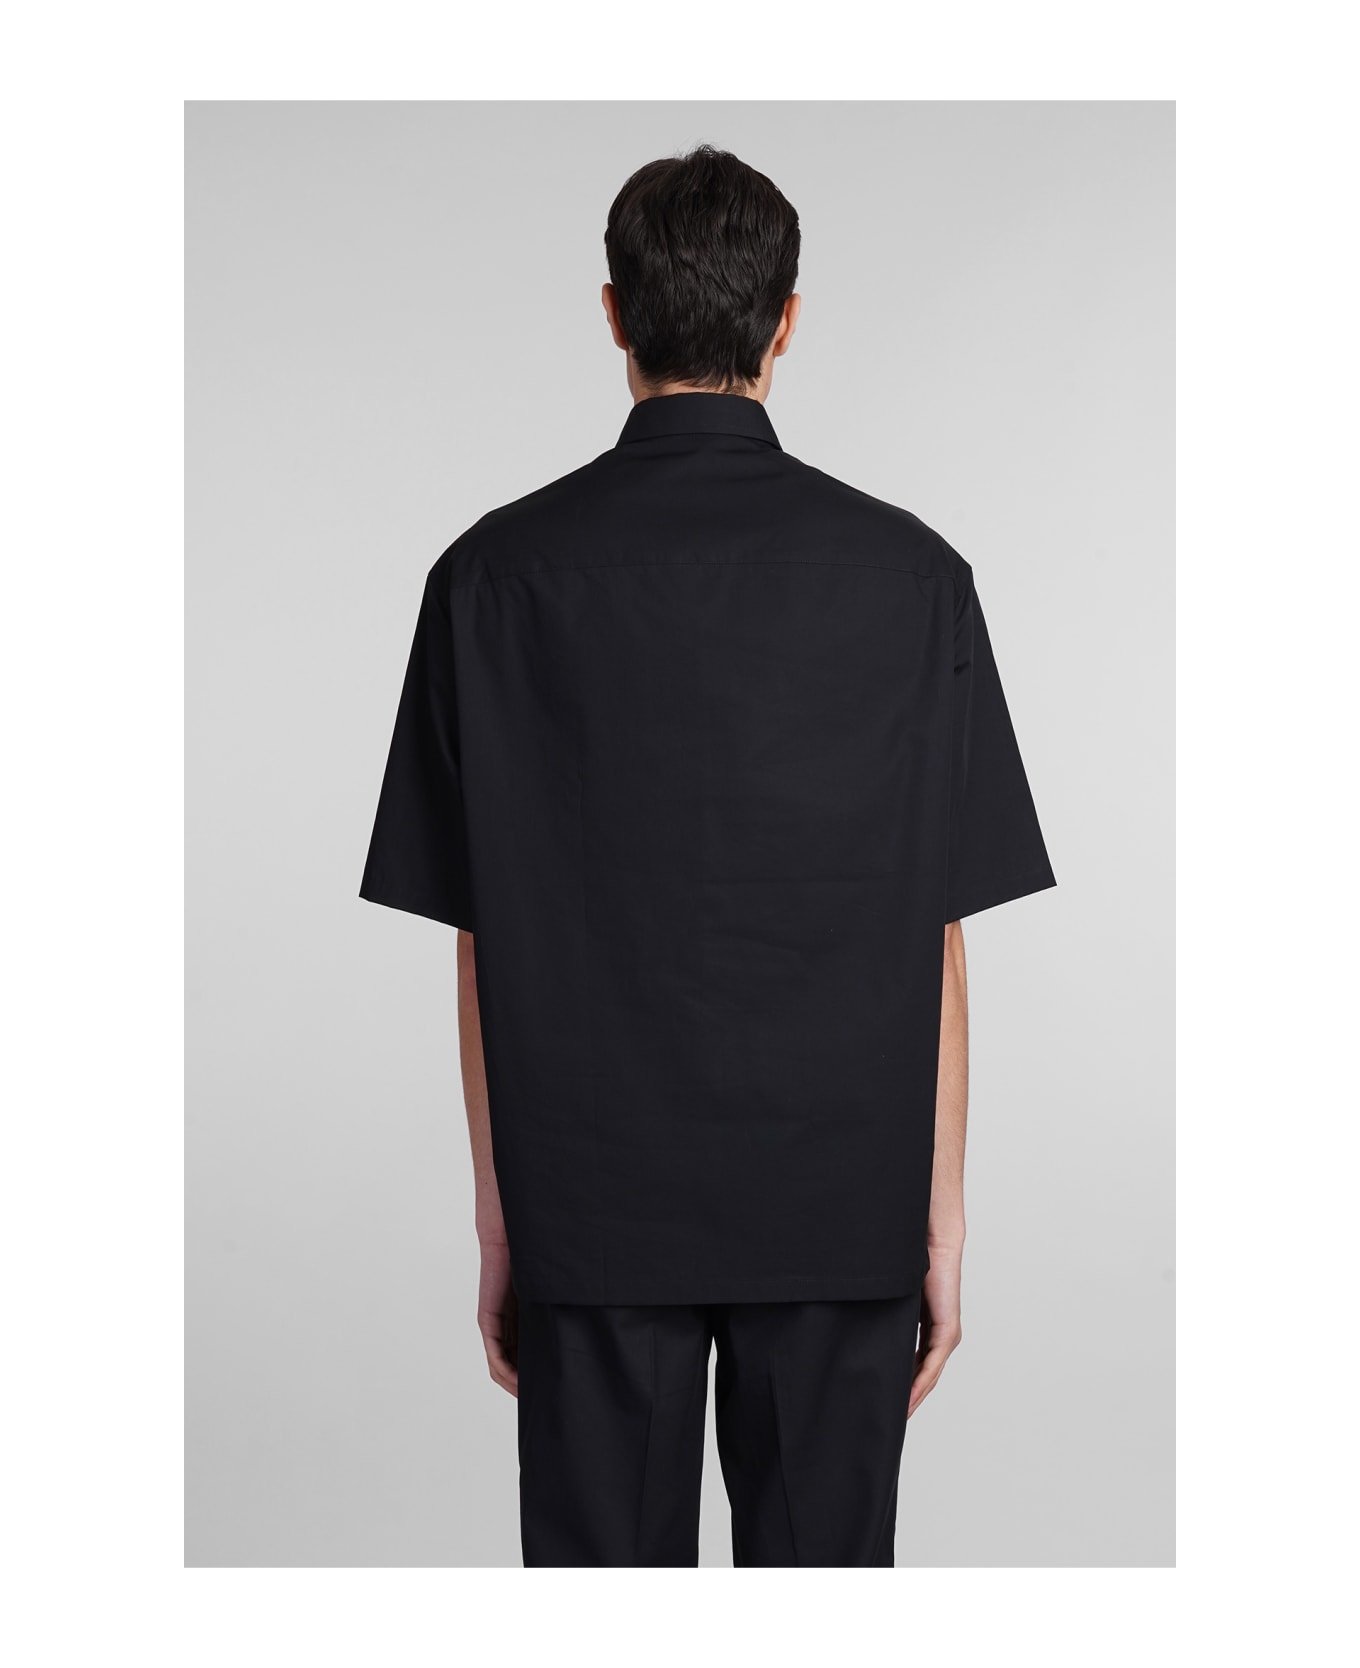 Emporio Armani Shirt In Black Cotton - Nero